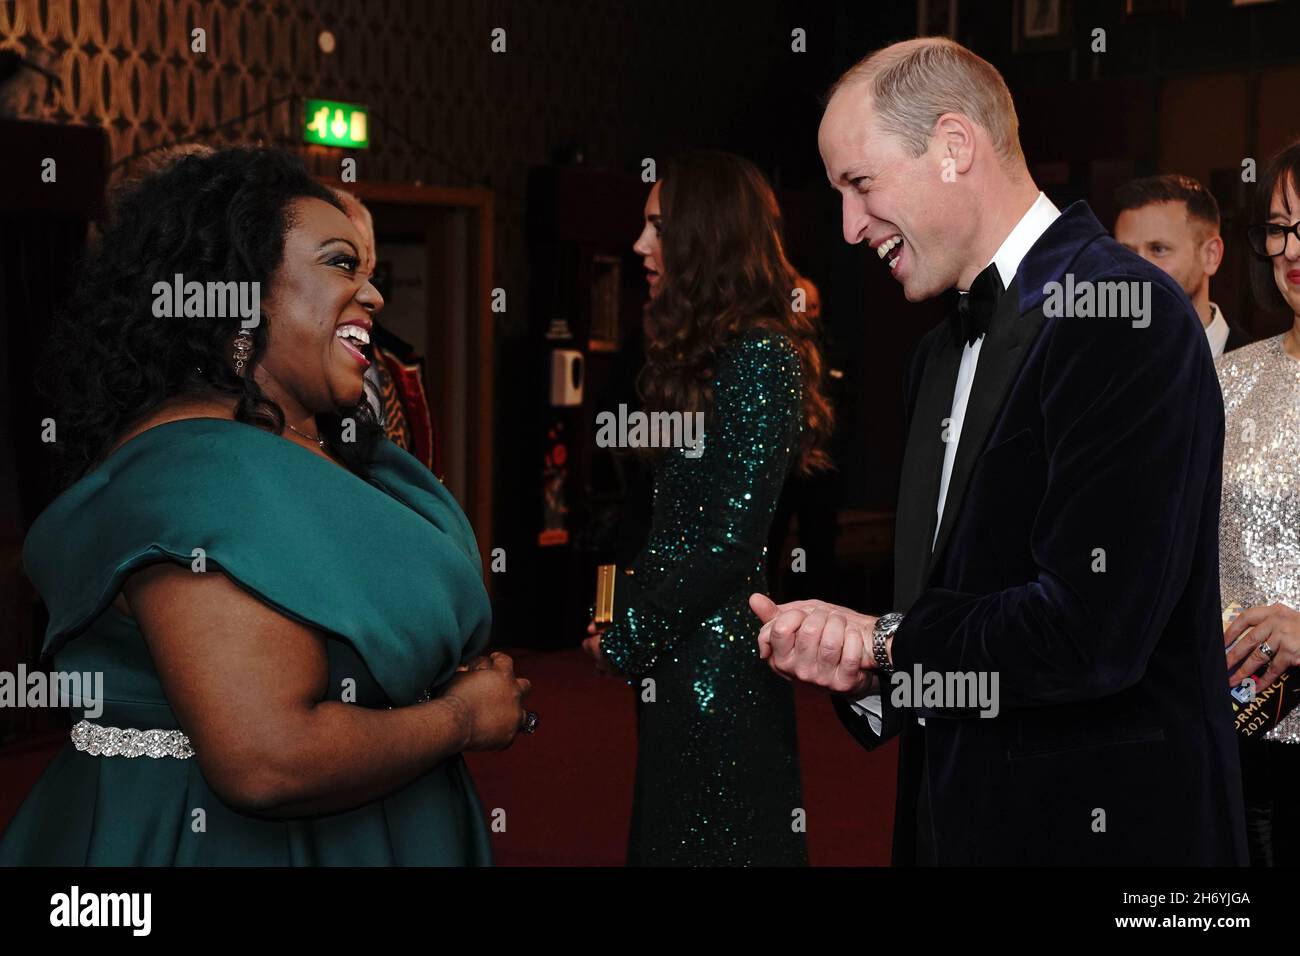 Le duc de Cambridge s'est exprimé devant Judi Love après la Royal Variety Performance au Royal Albert Hall, Londres.Date de la photo: Jeudi 18 novembre 2021. Banque D'Images